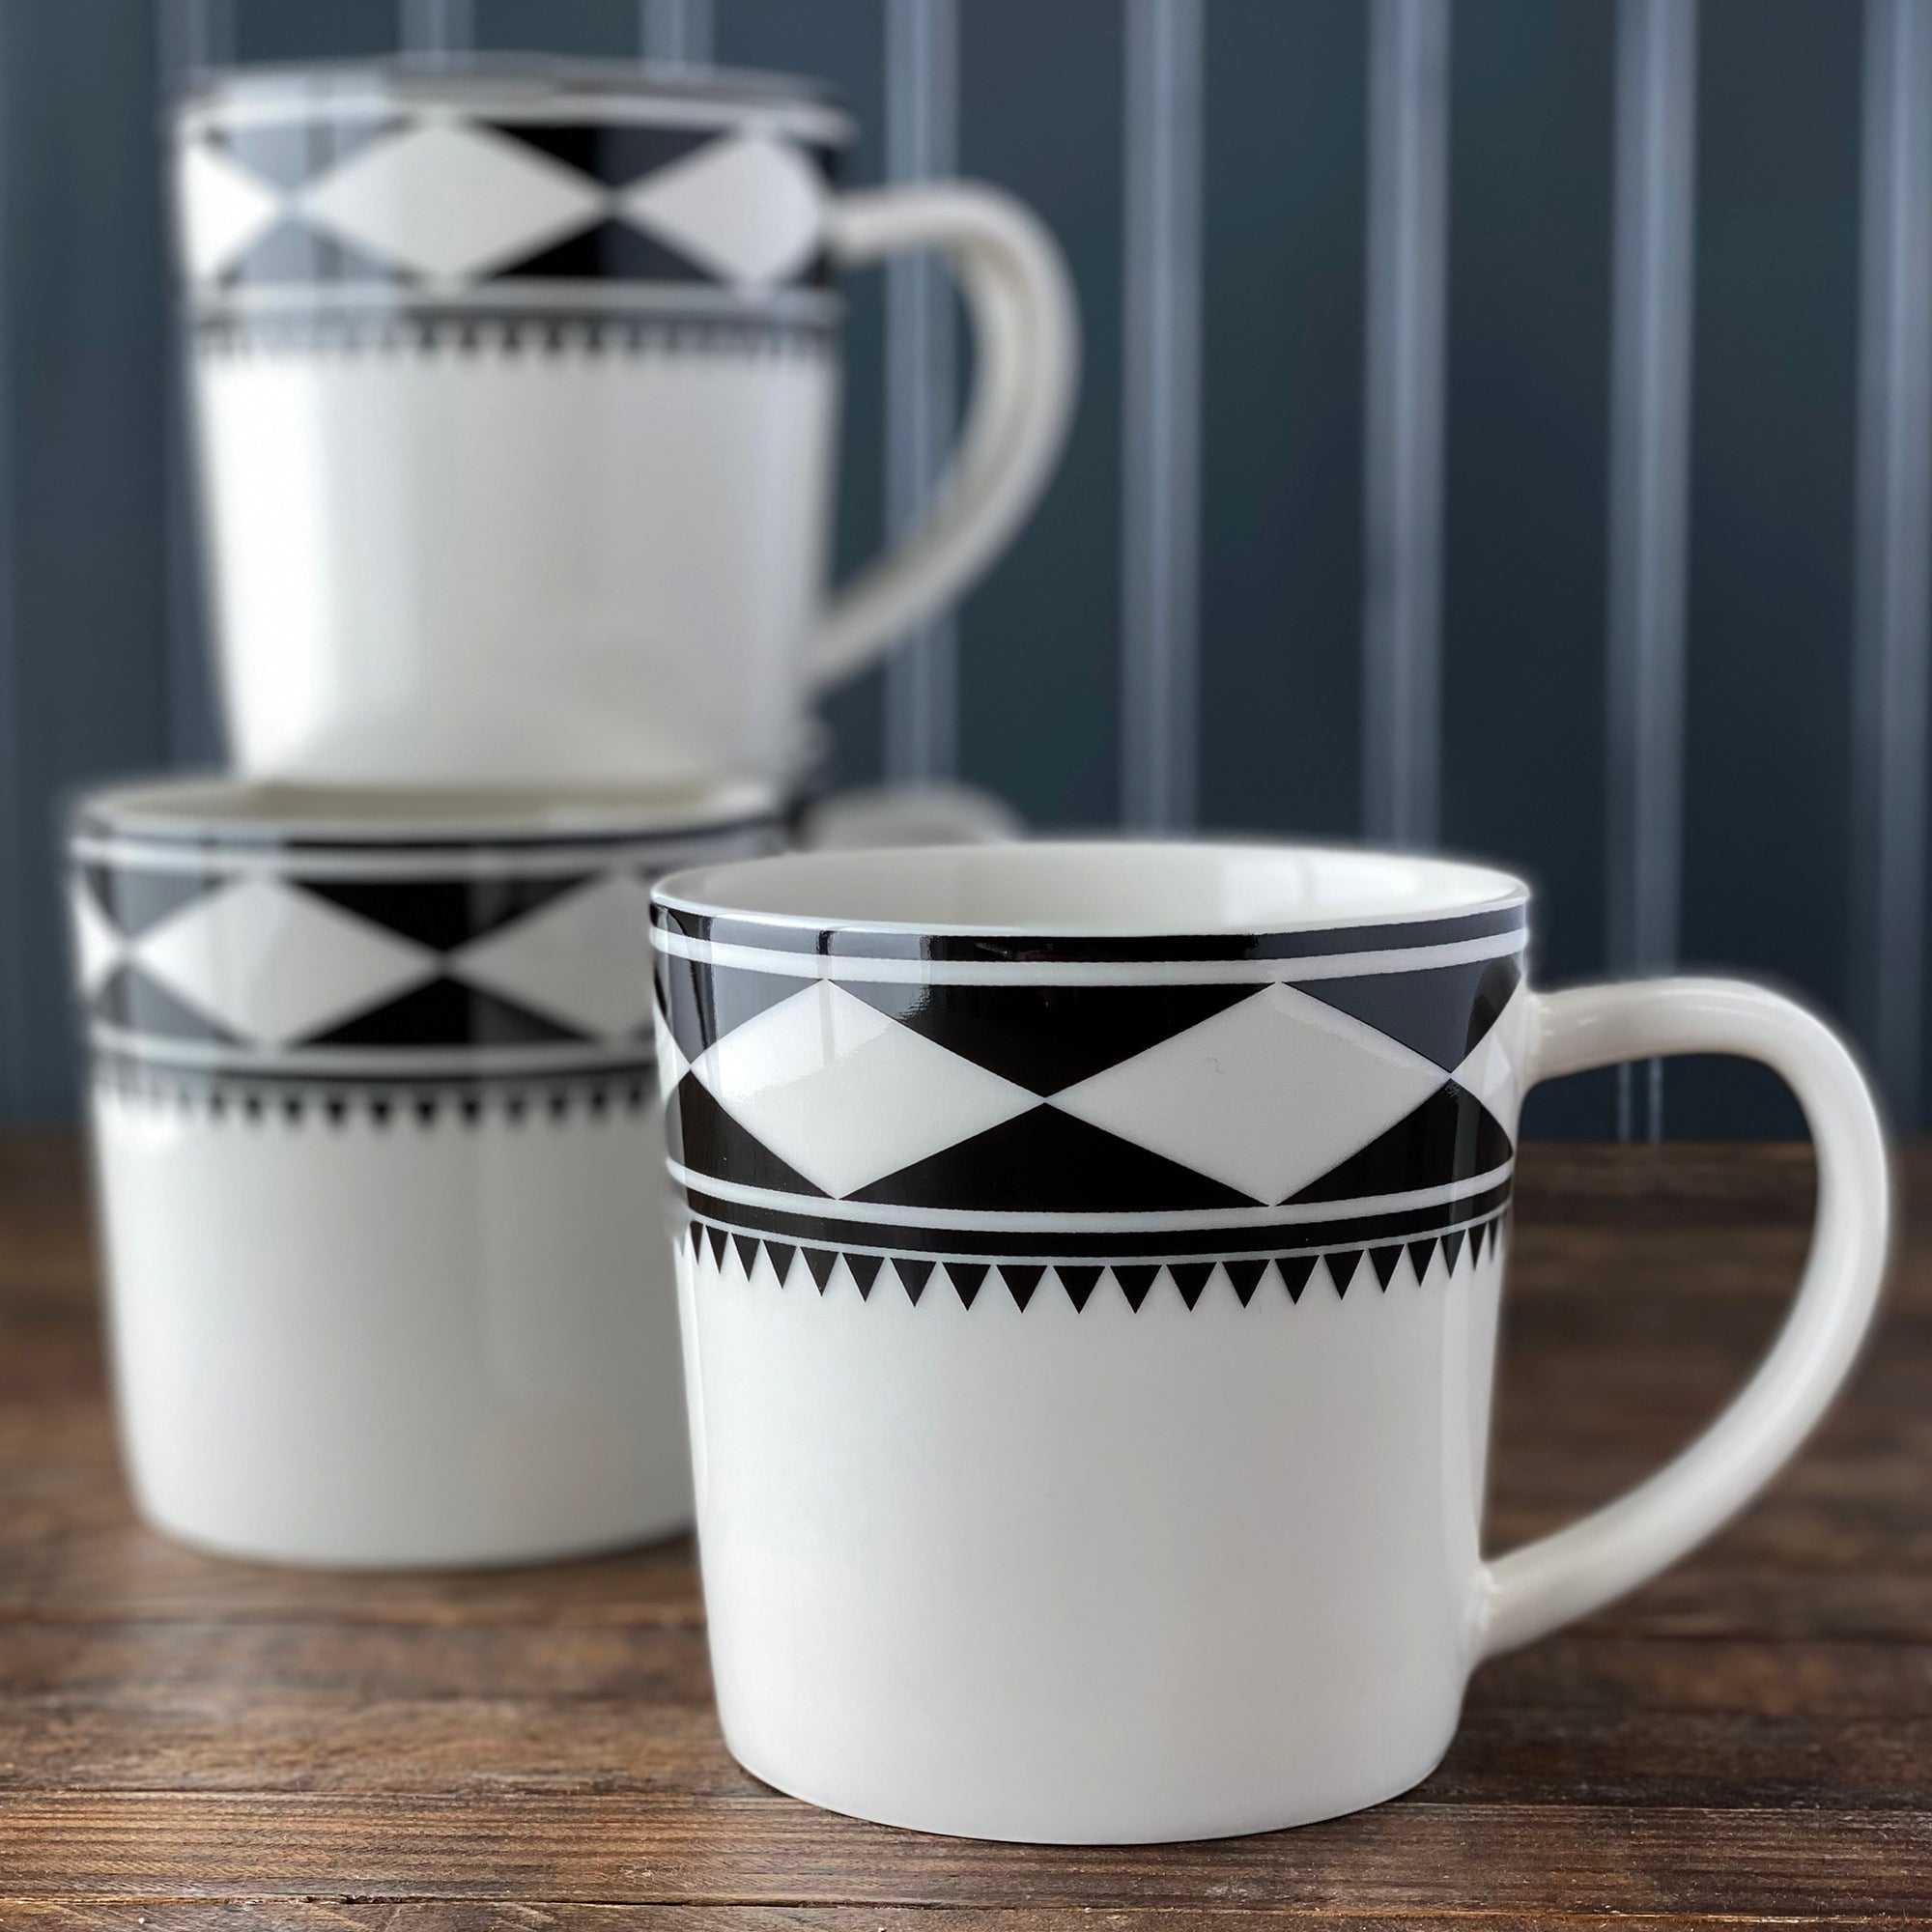 Fez Mug in black and white high-fired porcelain dinnerware- Caskata